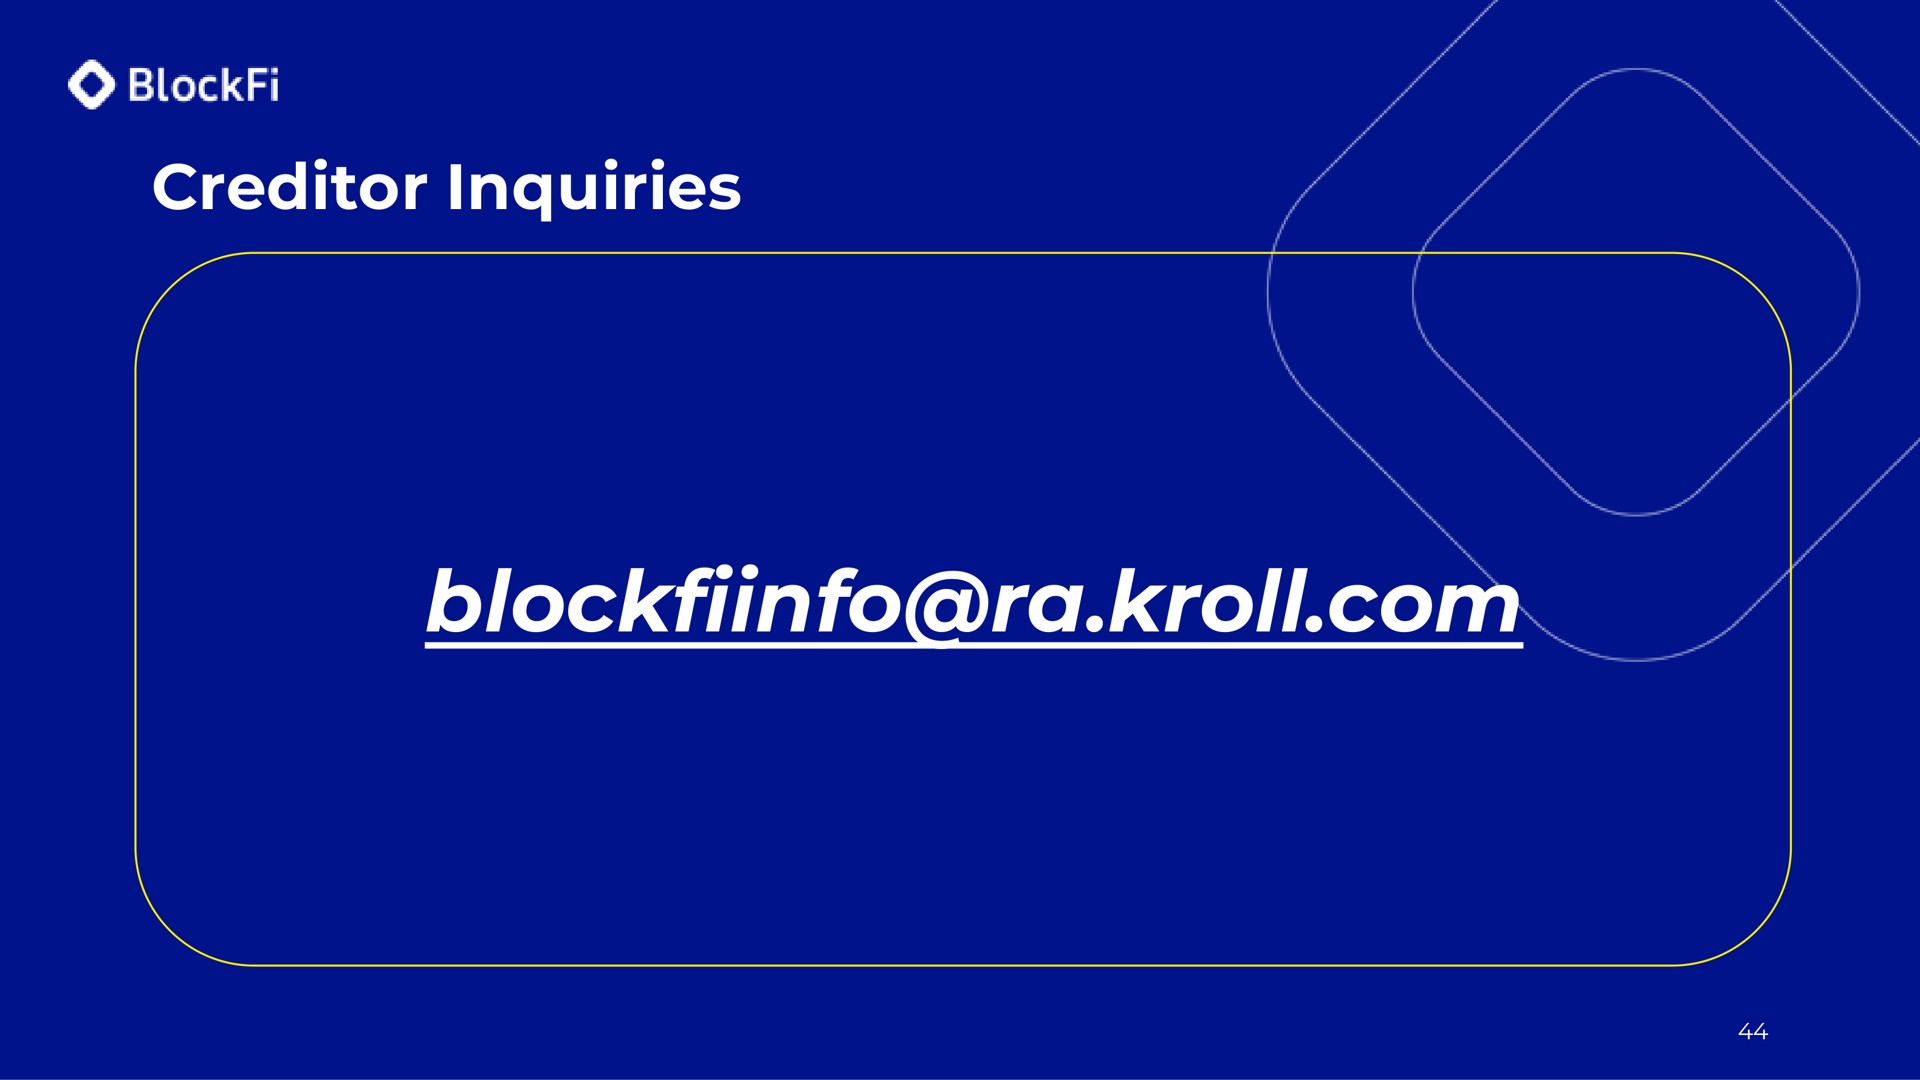 creditor inquiries at | BlockFi